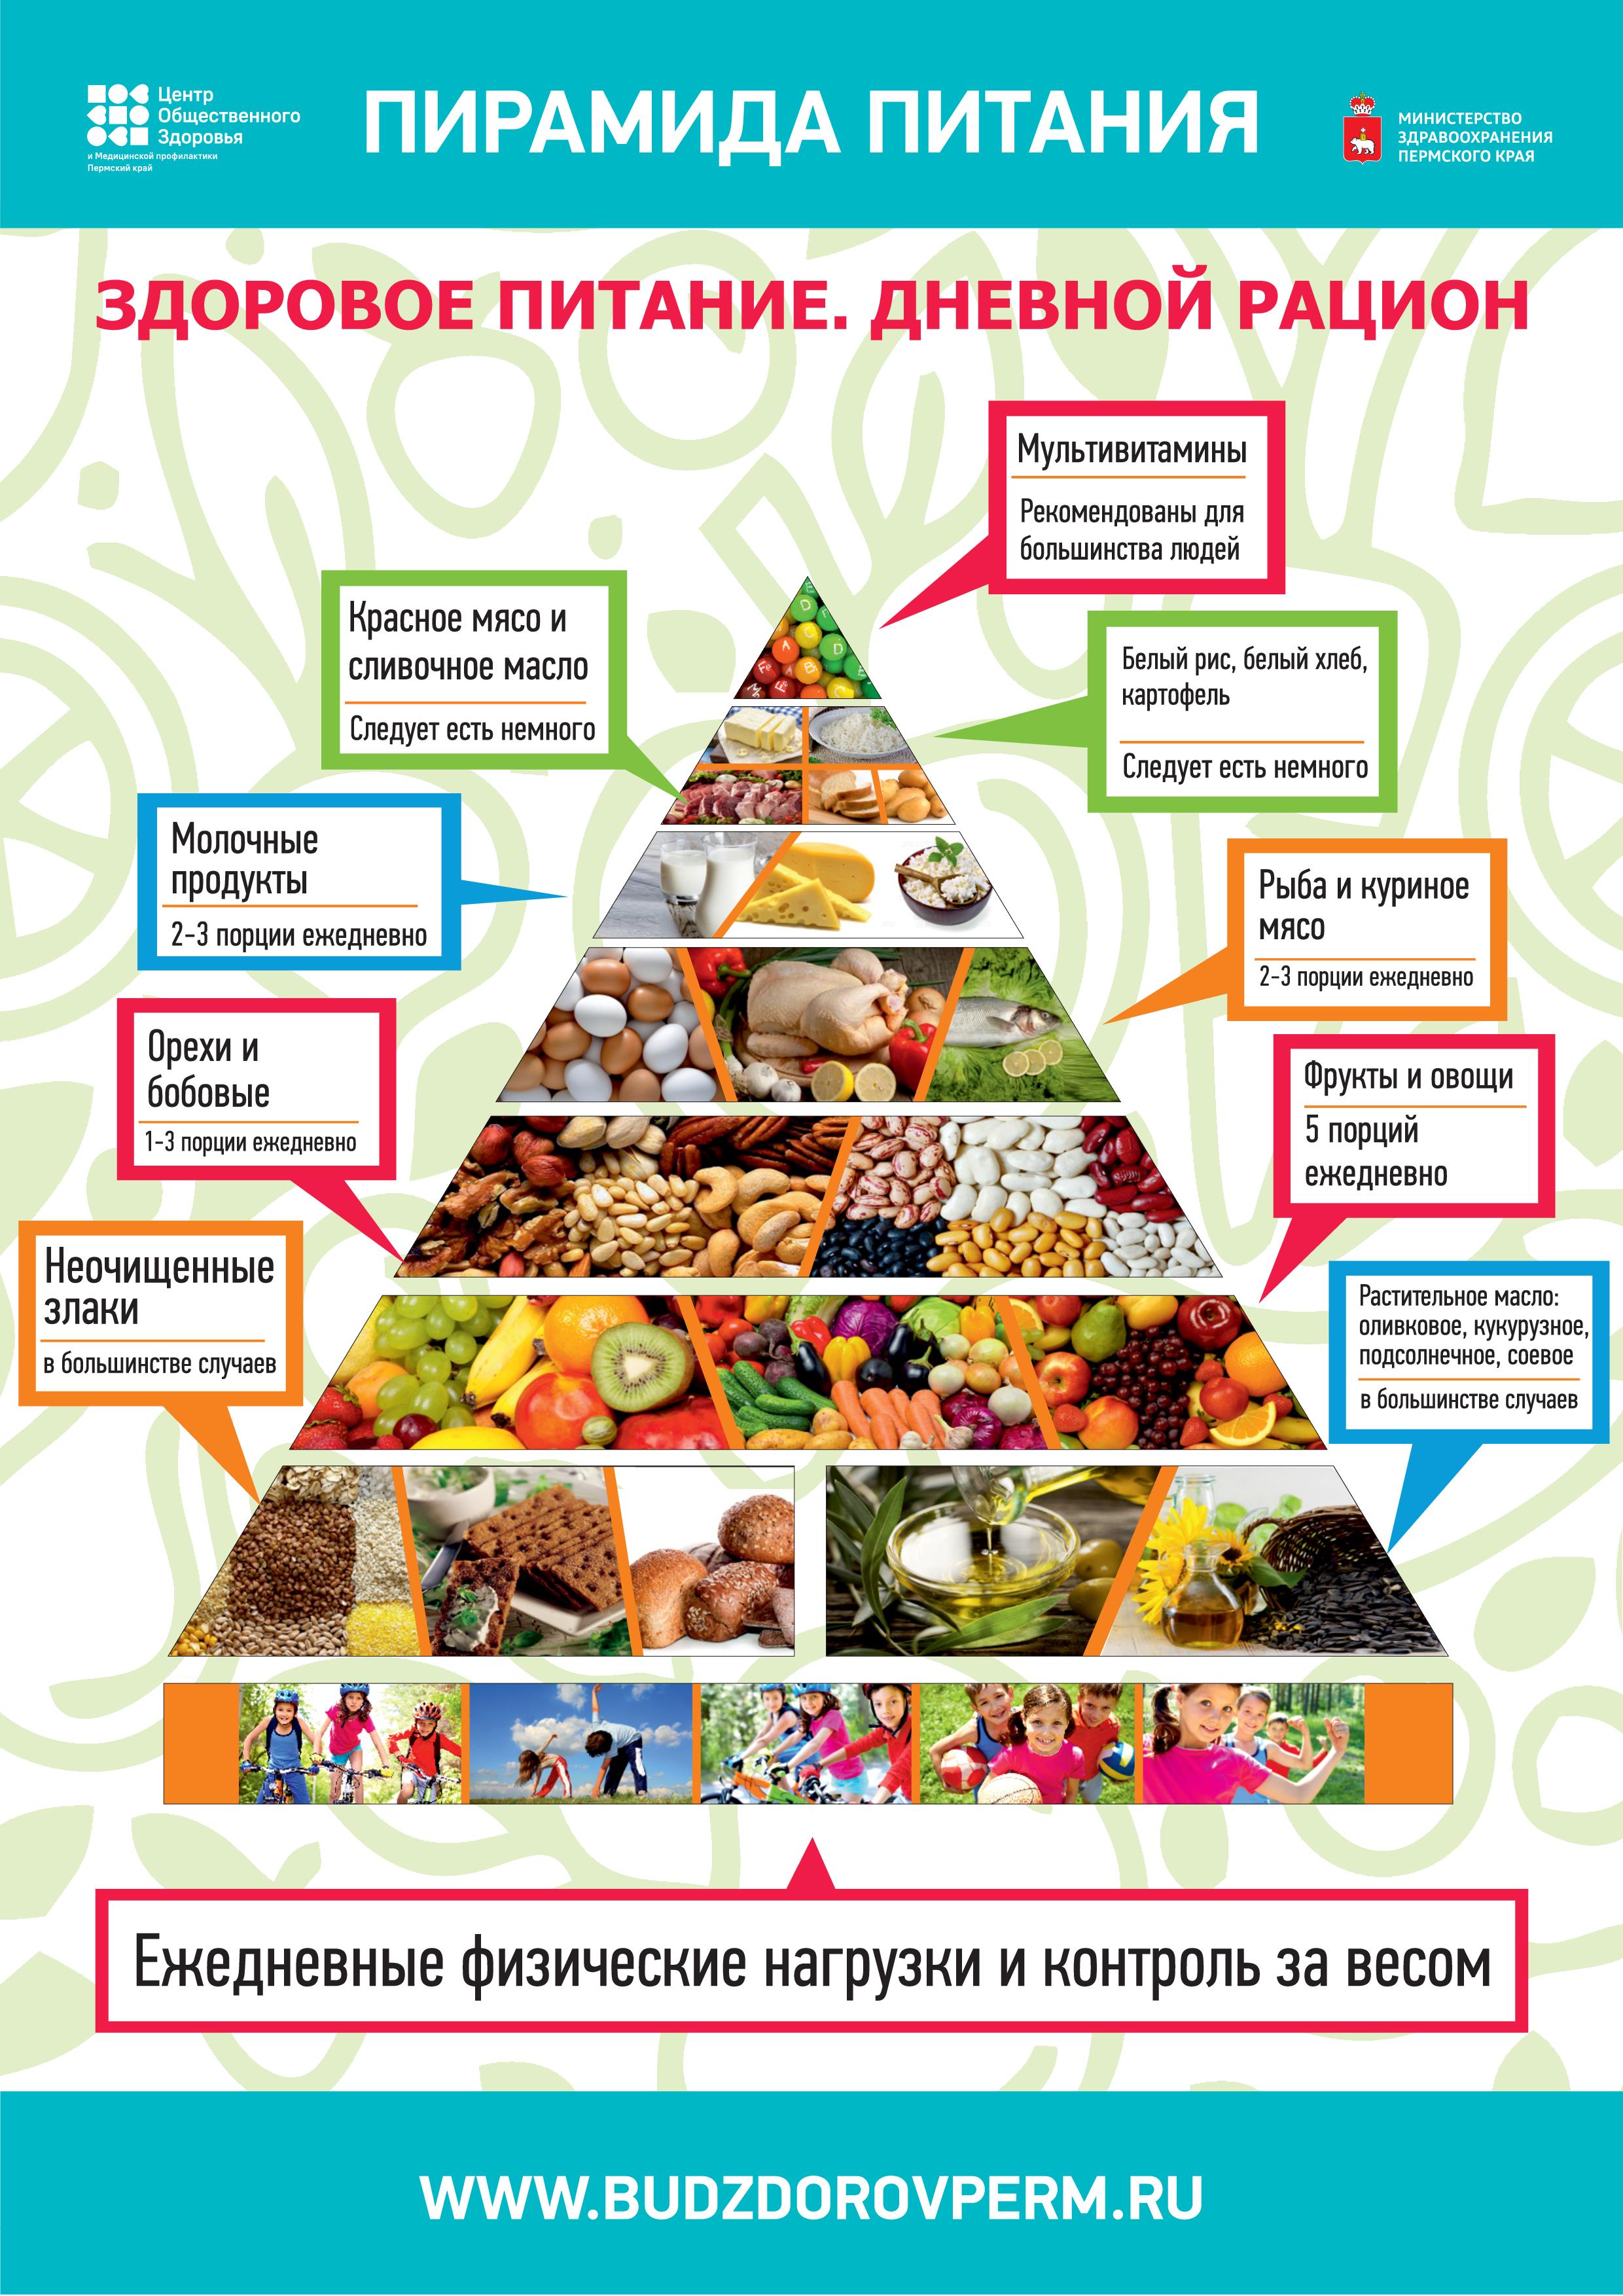 Здоровое питание школьников регистрация. Пищевая пирамида питания дневной рацион. Пищевая пирамида питания здорового питания для детей. Пирамида правильного питания. Пирамида правильного питания для детей.